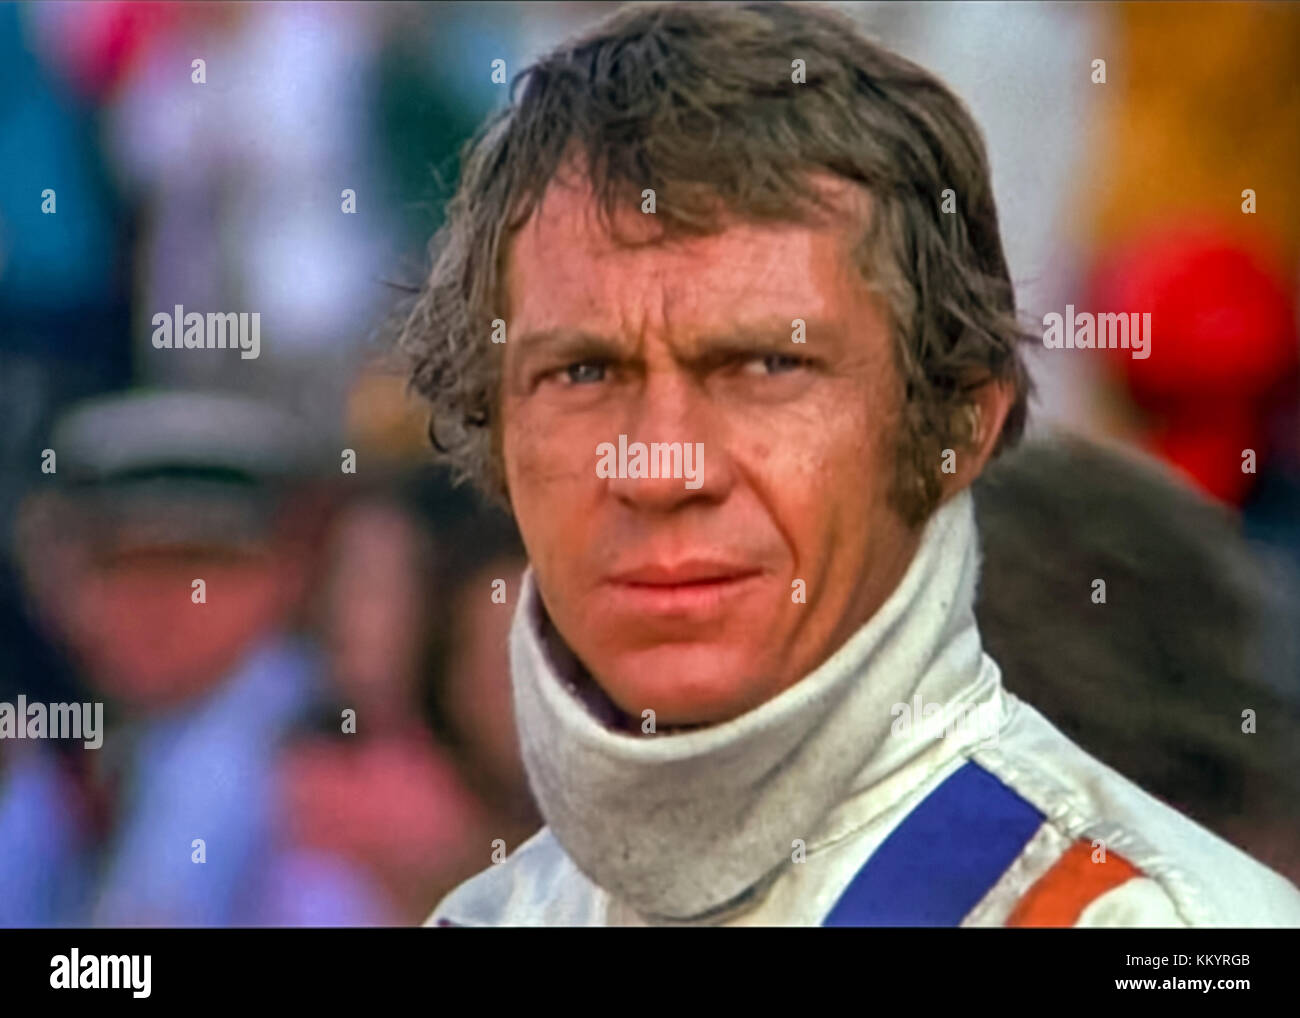 Steve McQueen als Rennfahrer Michael Delaney im Golf Team Porsche 917 von "Le Mans" (1971) unter der Regie von H. Lee Katzin. Stockfoto